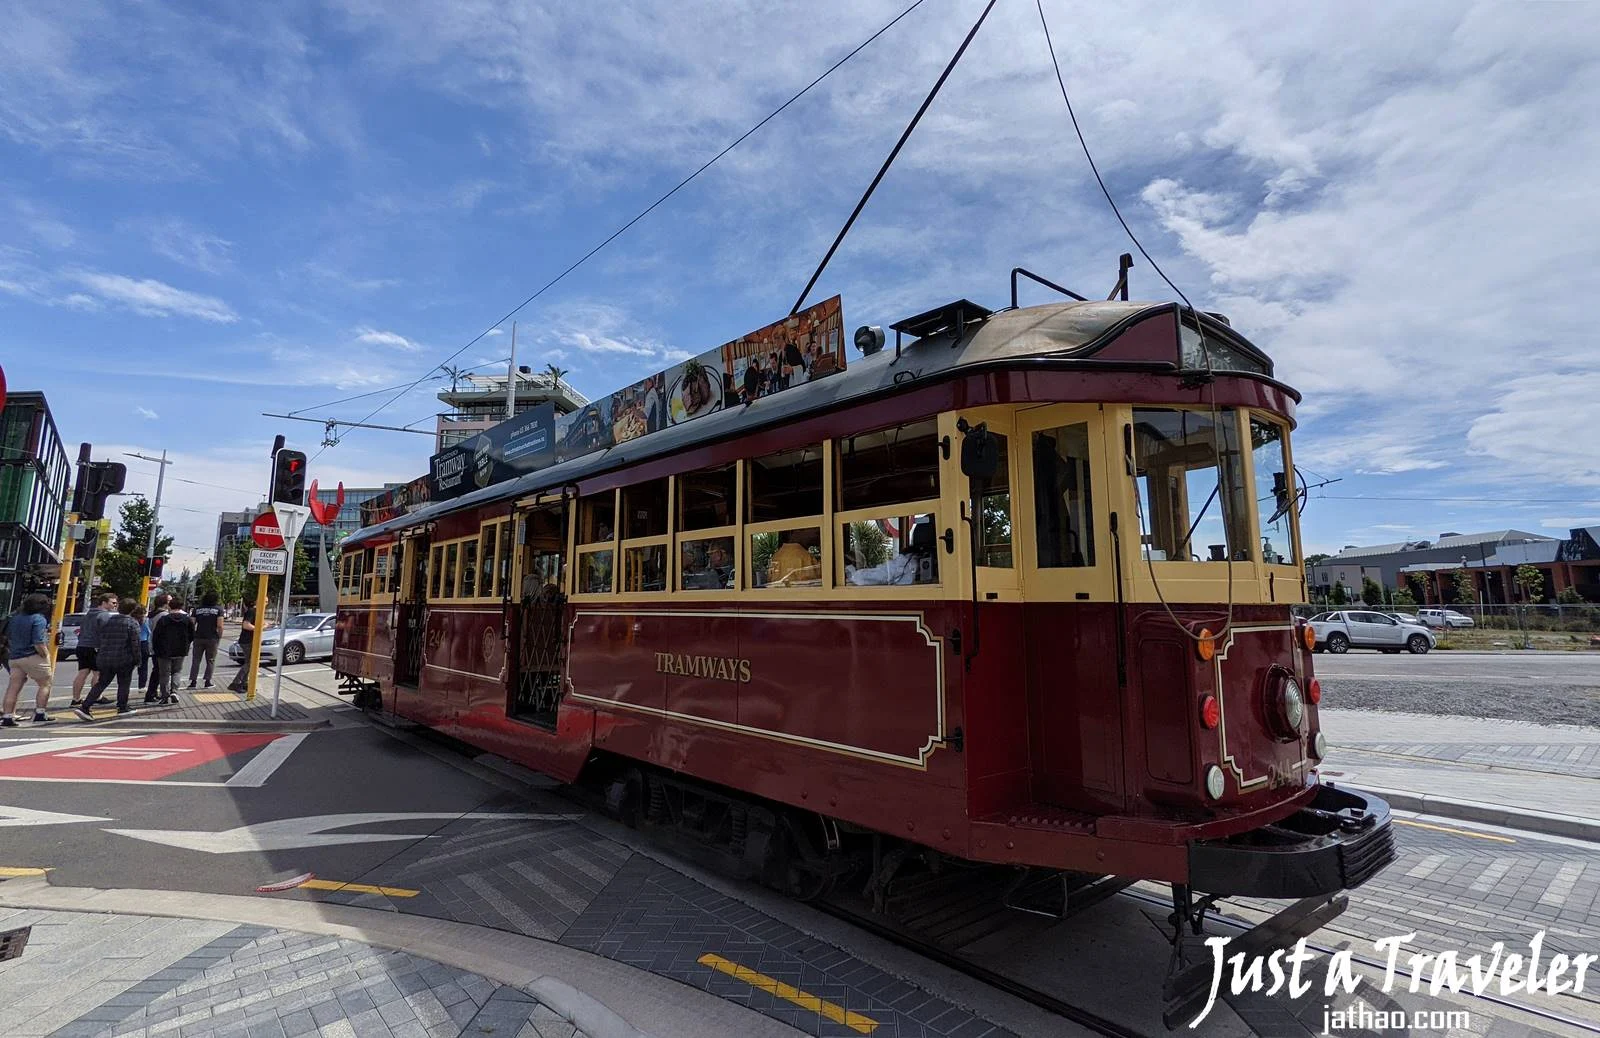 基督城-景點-推薦-基督城復古電車-Christchurch-Tram-基督城自由行景點-基督城必玩景點-基督城必去景點-基督城好玩景點-市區-附近-攻略-基督城旅遊景點-基督城觀光景點-基督城行程-基督城旅行-紐西蘭-南島-Christchurch-Tourist-Attraction